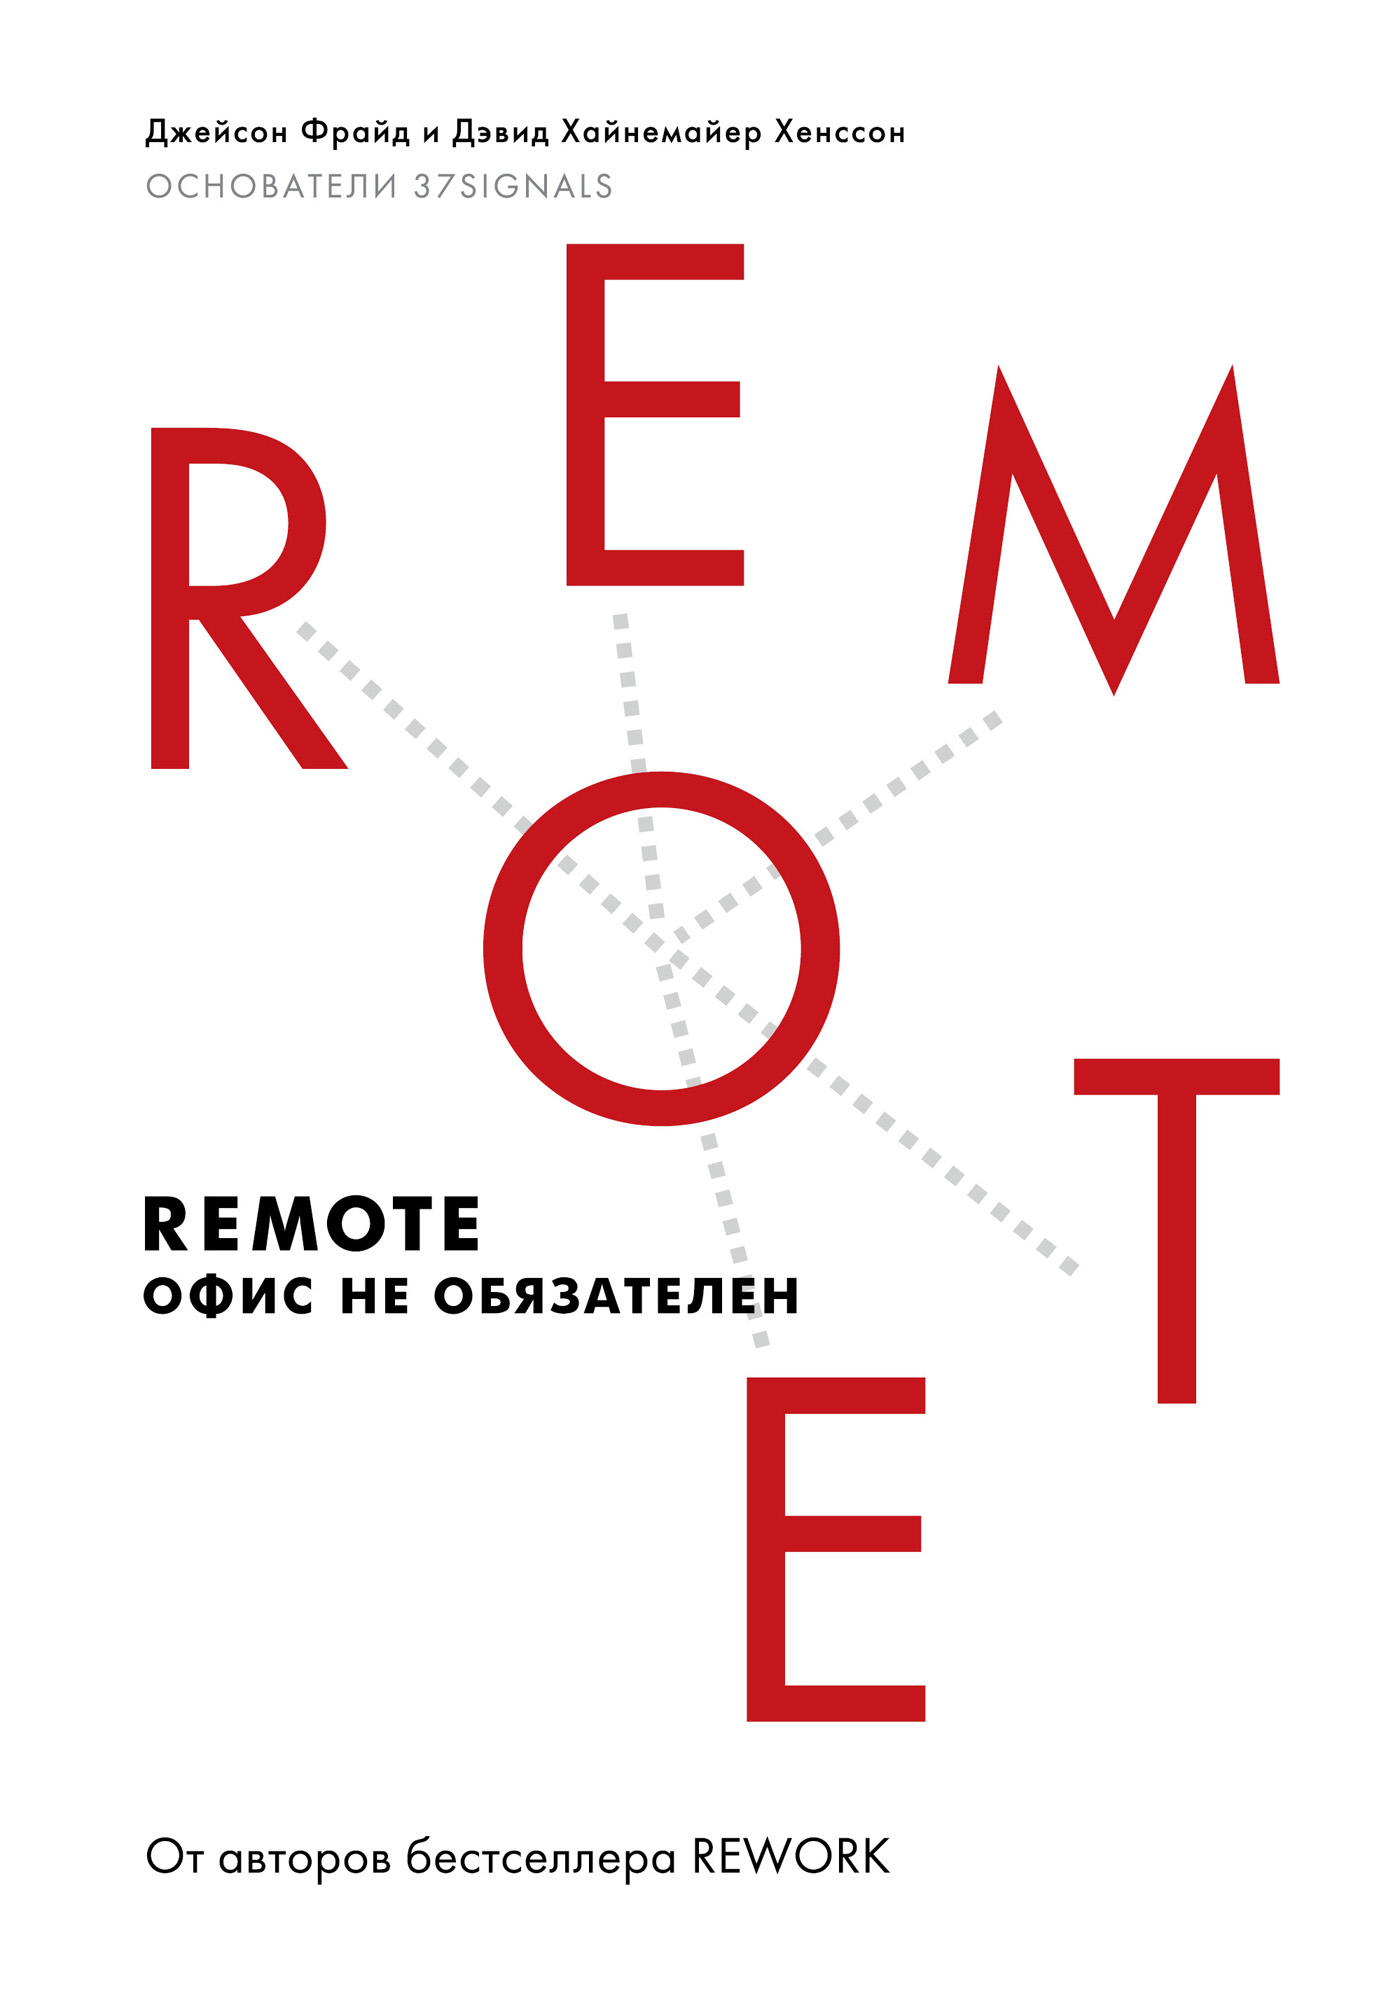 Книга Remote: офис не обязателен из серии , созданная Дэвид Хенссон, Джейсон Фрайд, может относится к жанру Зарубежная деловая литература, Поиск работы, карьера. Стоимость электронной книги Remote: офис не обязателен с идентификатором 6611896 составляет 349.00 руб.